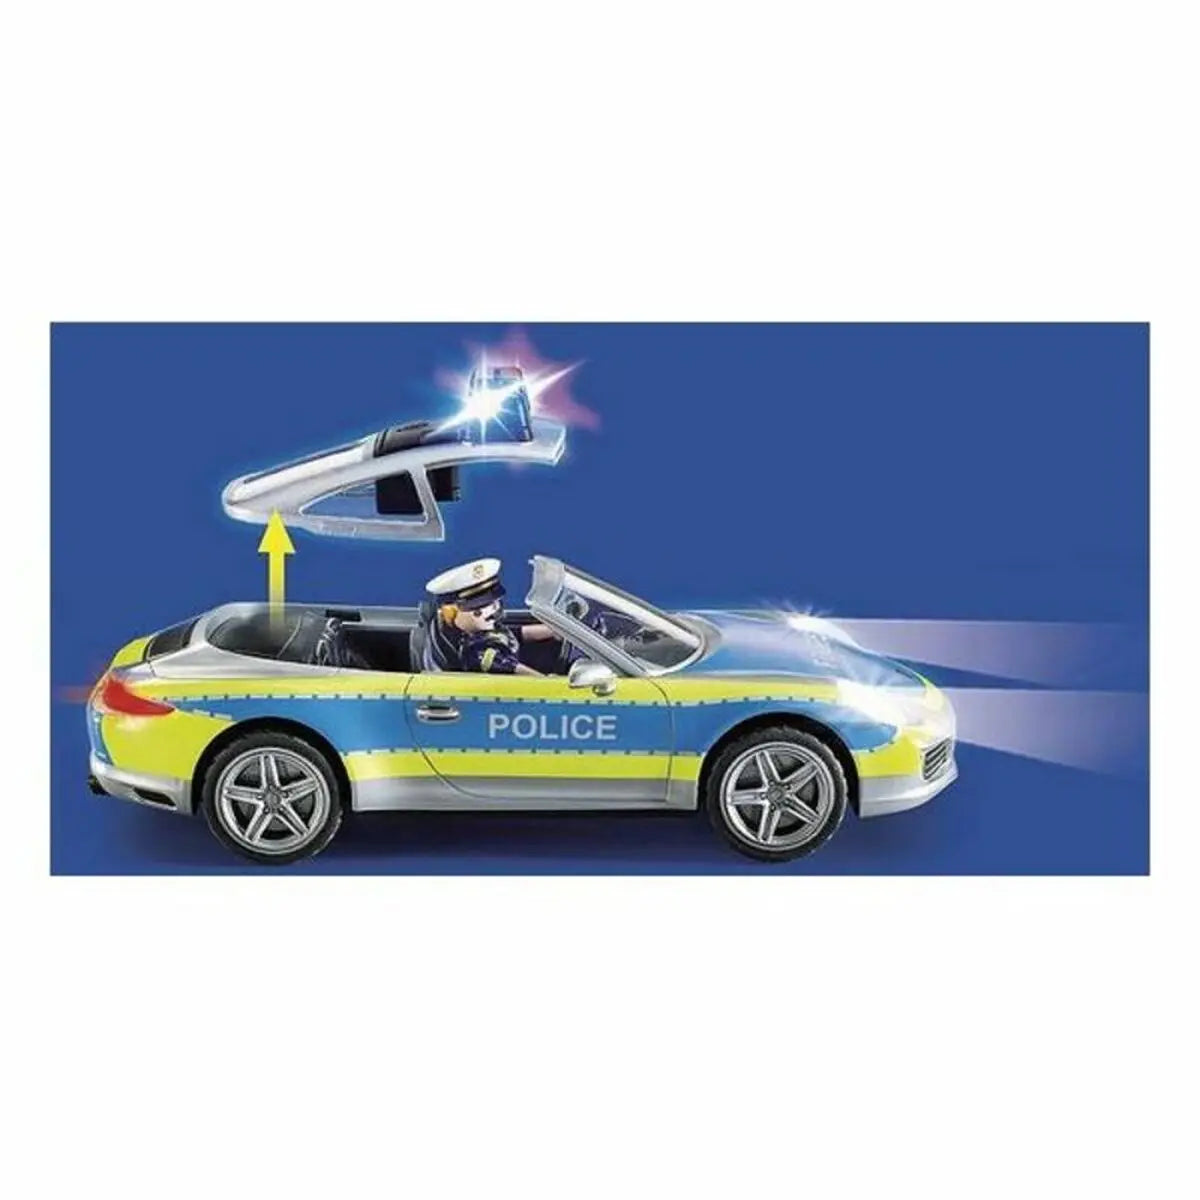 Playset Porsche 911 Carrera 4S Police Playmobil 70066 (36 pcs) - Premium Toys from Bigbuy - Just $90.99! Shop now at Rapidvehicles